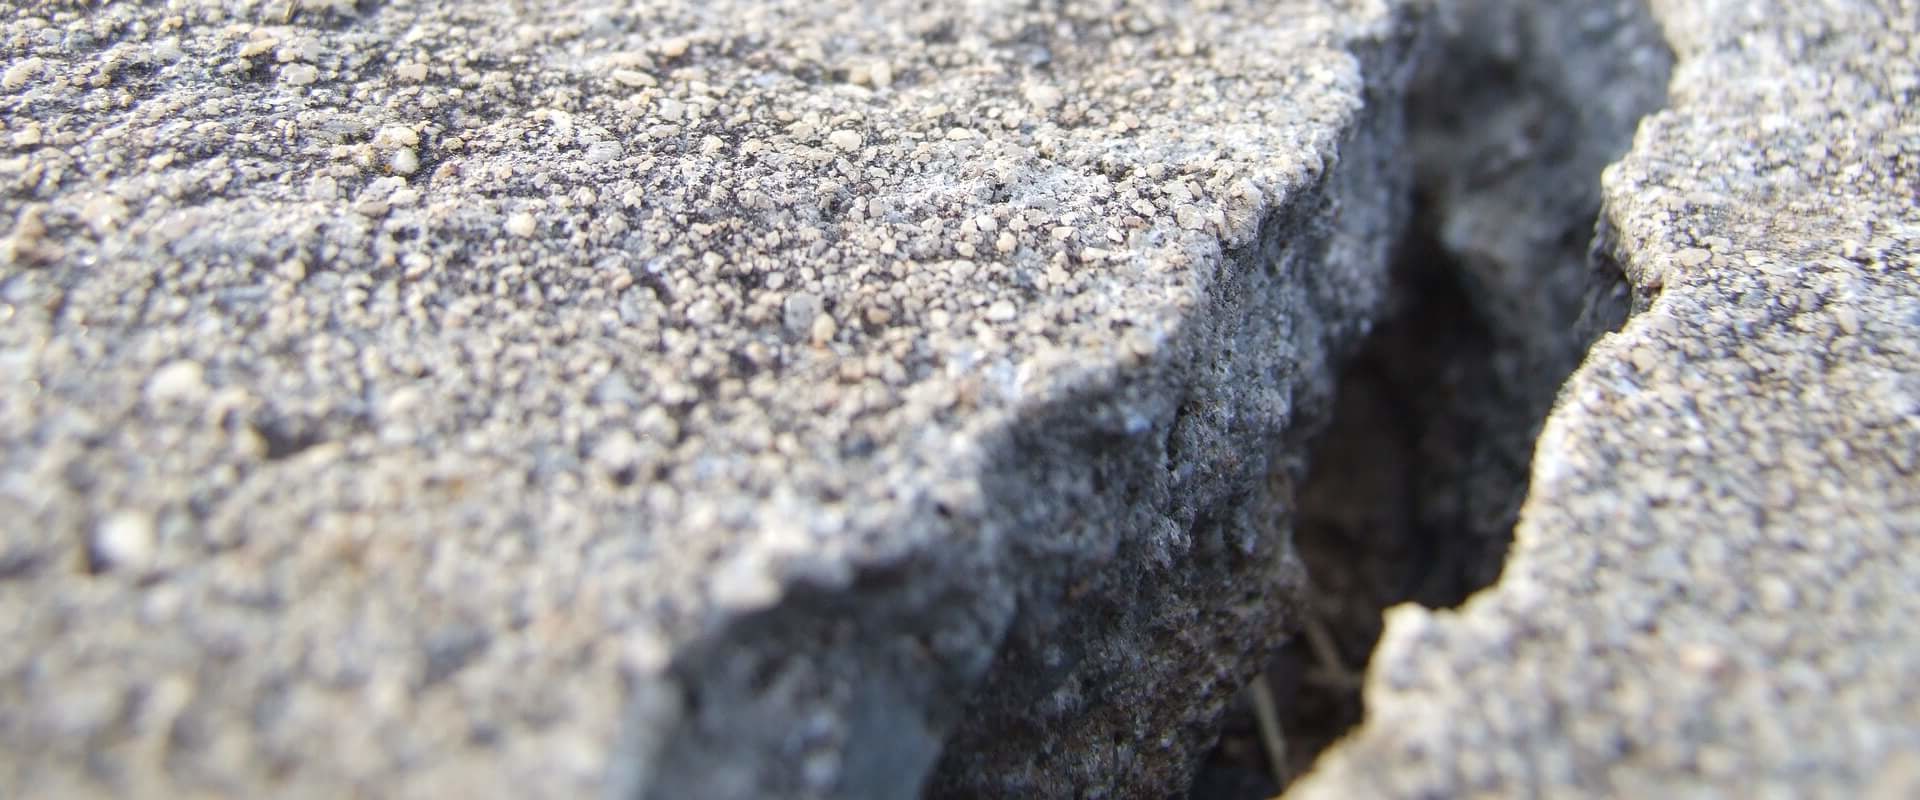 Why repair concrete cracks?